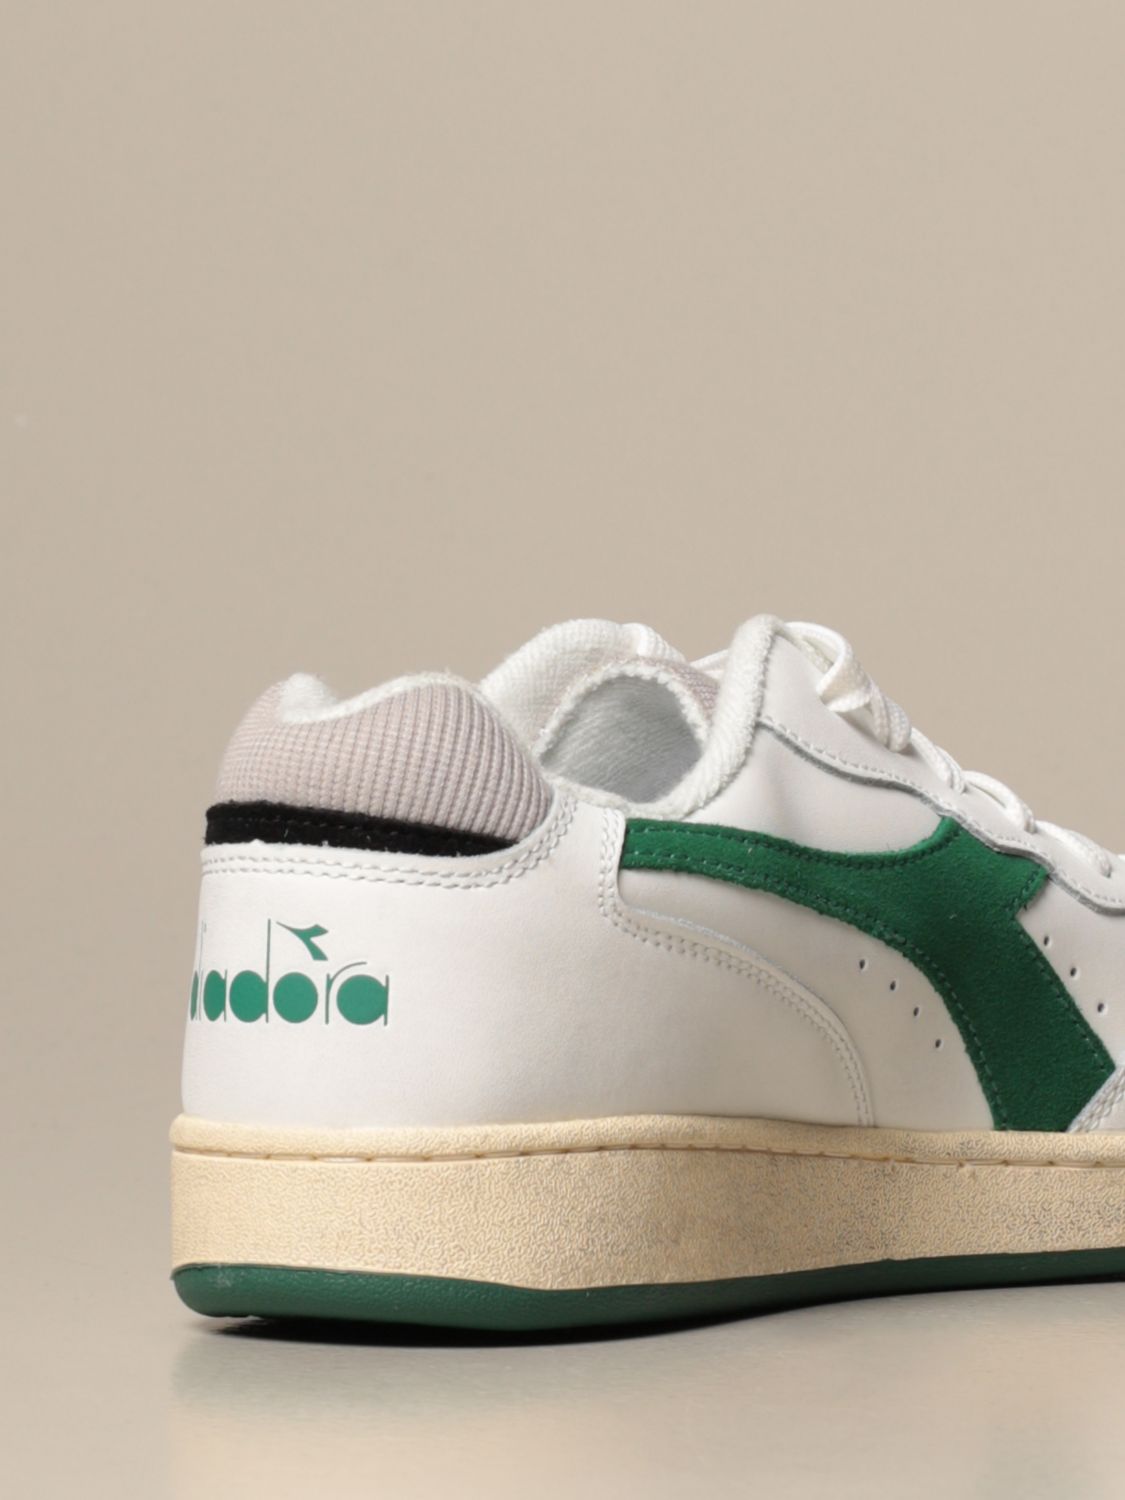 diadora sneakers green